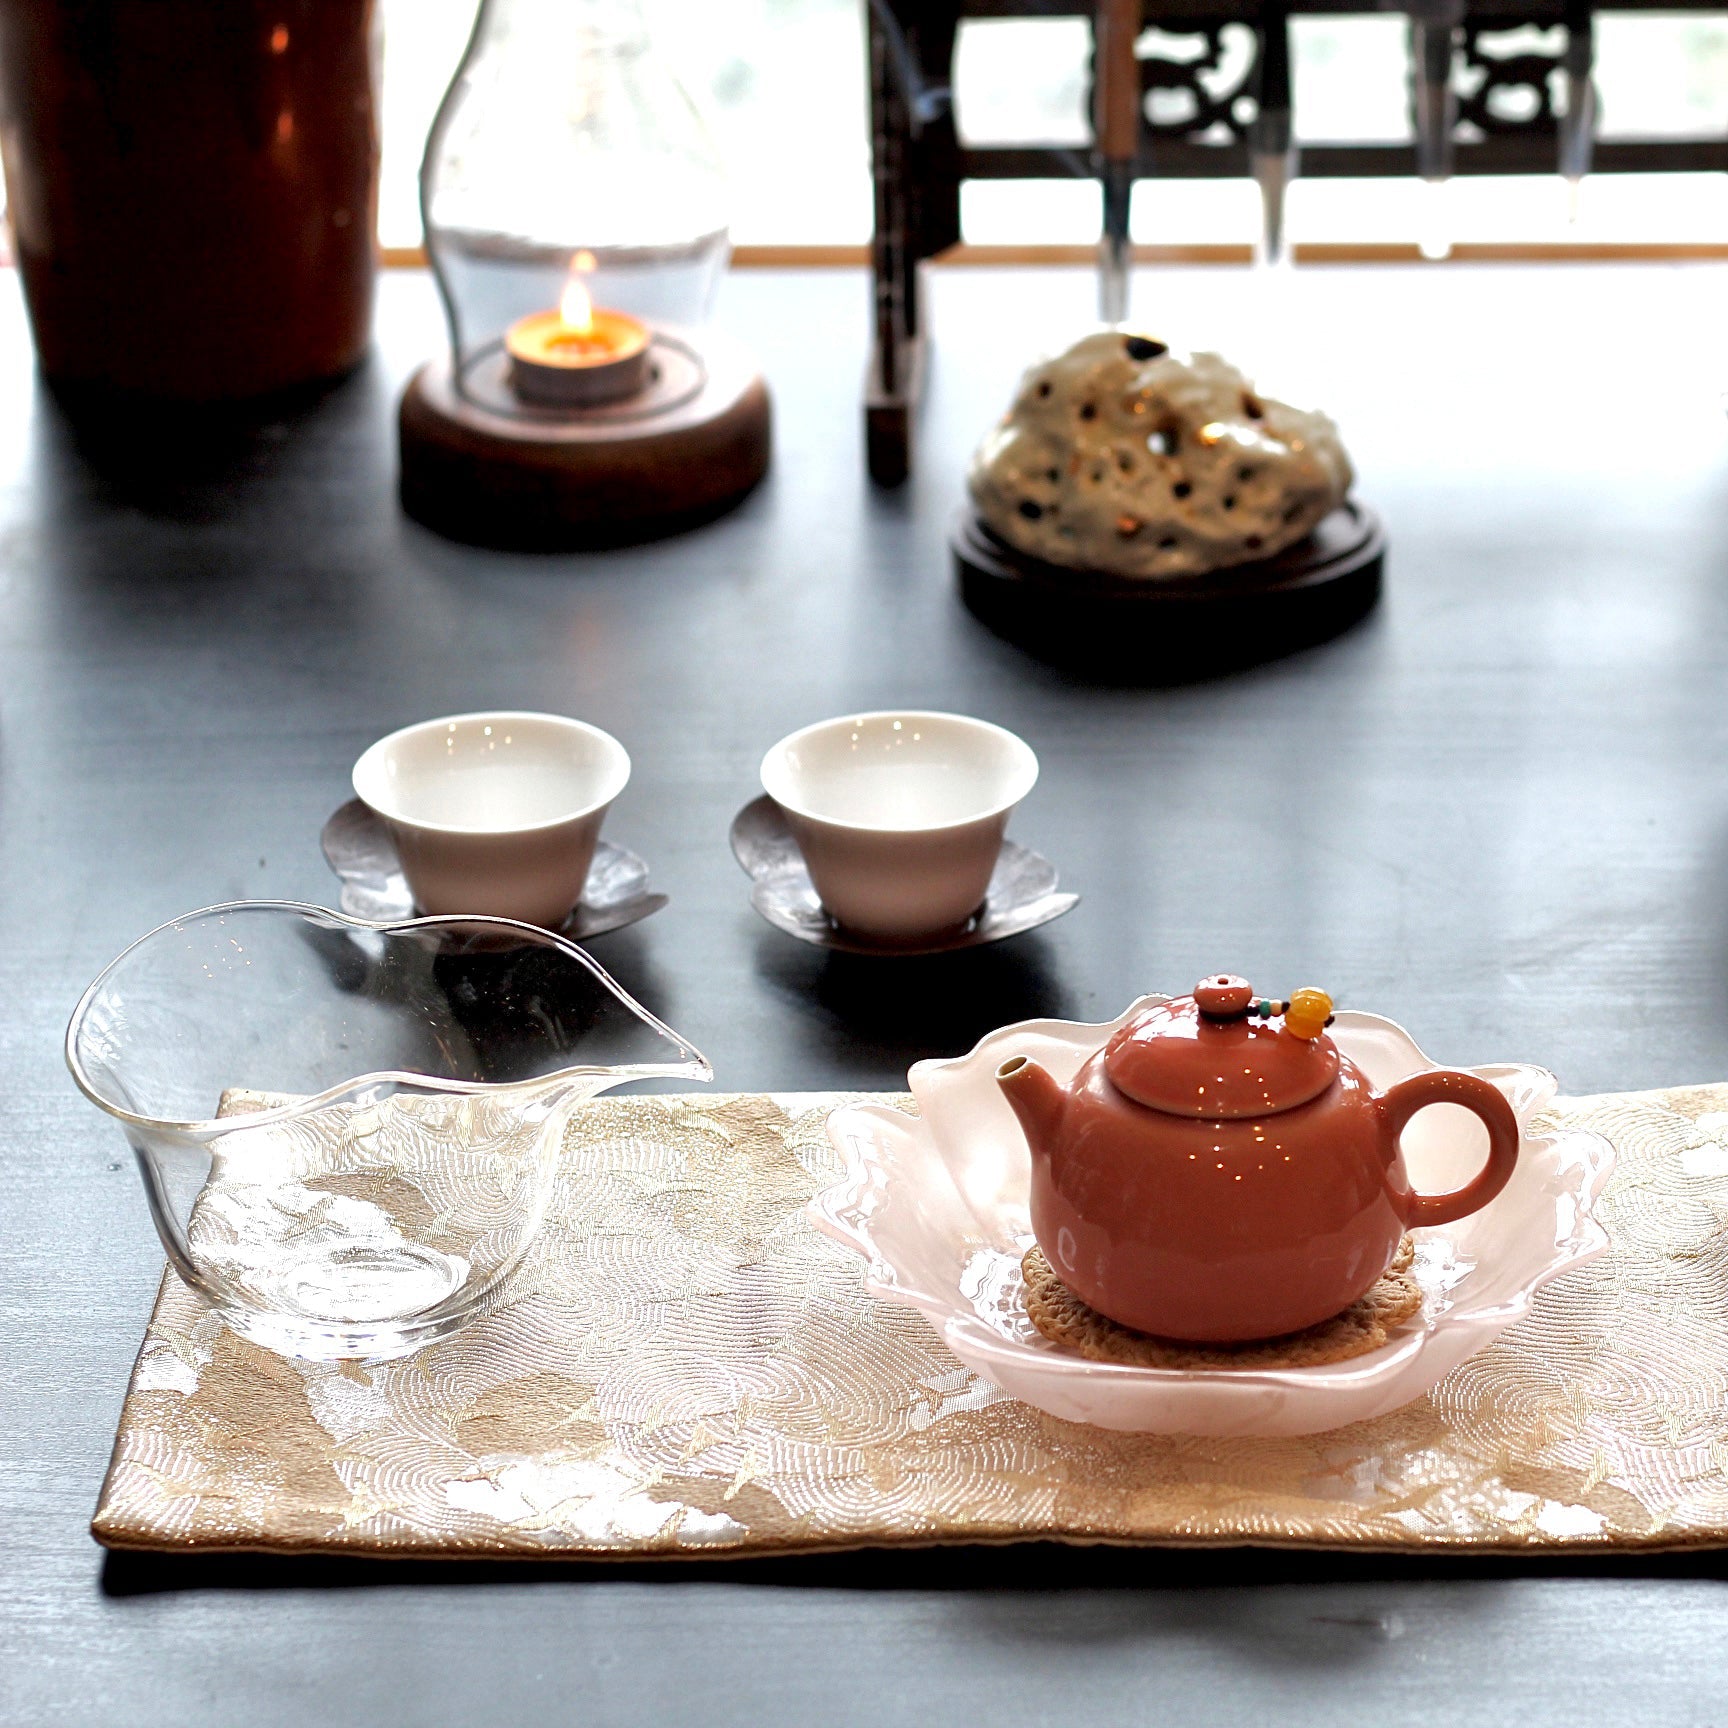 Teapot · Pomelo Red Empress Teapot